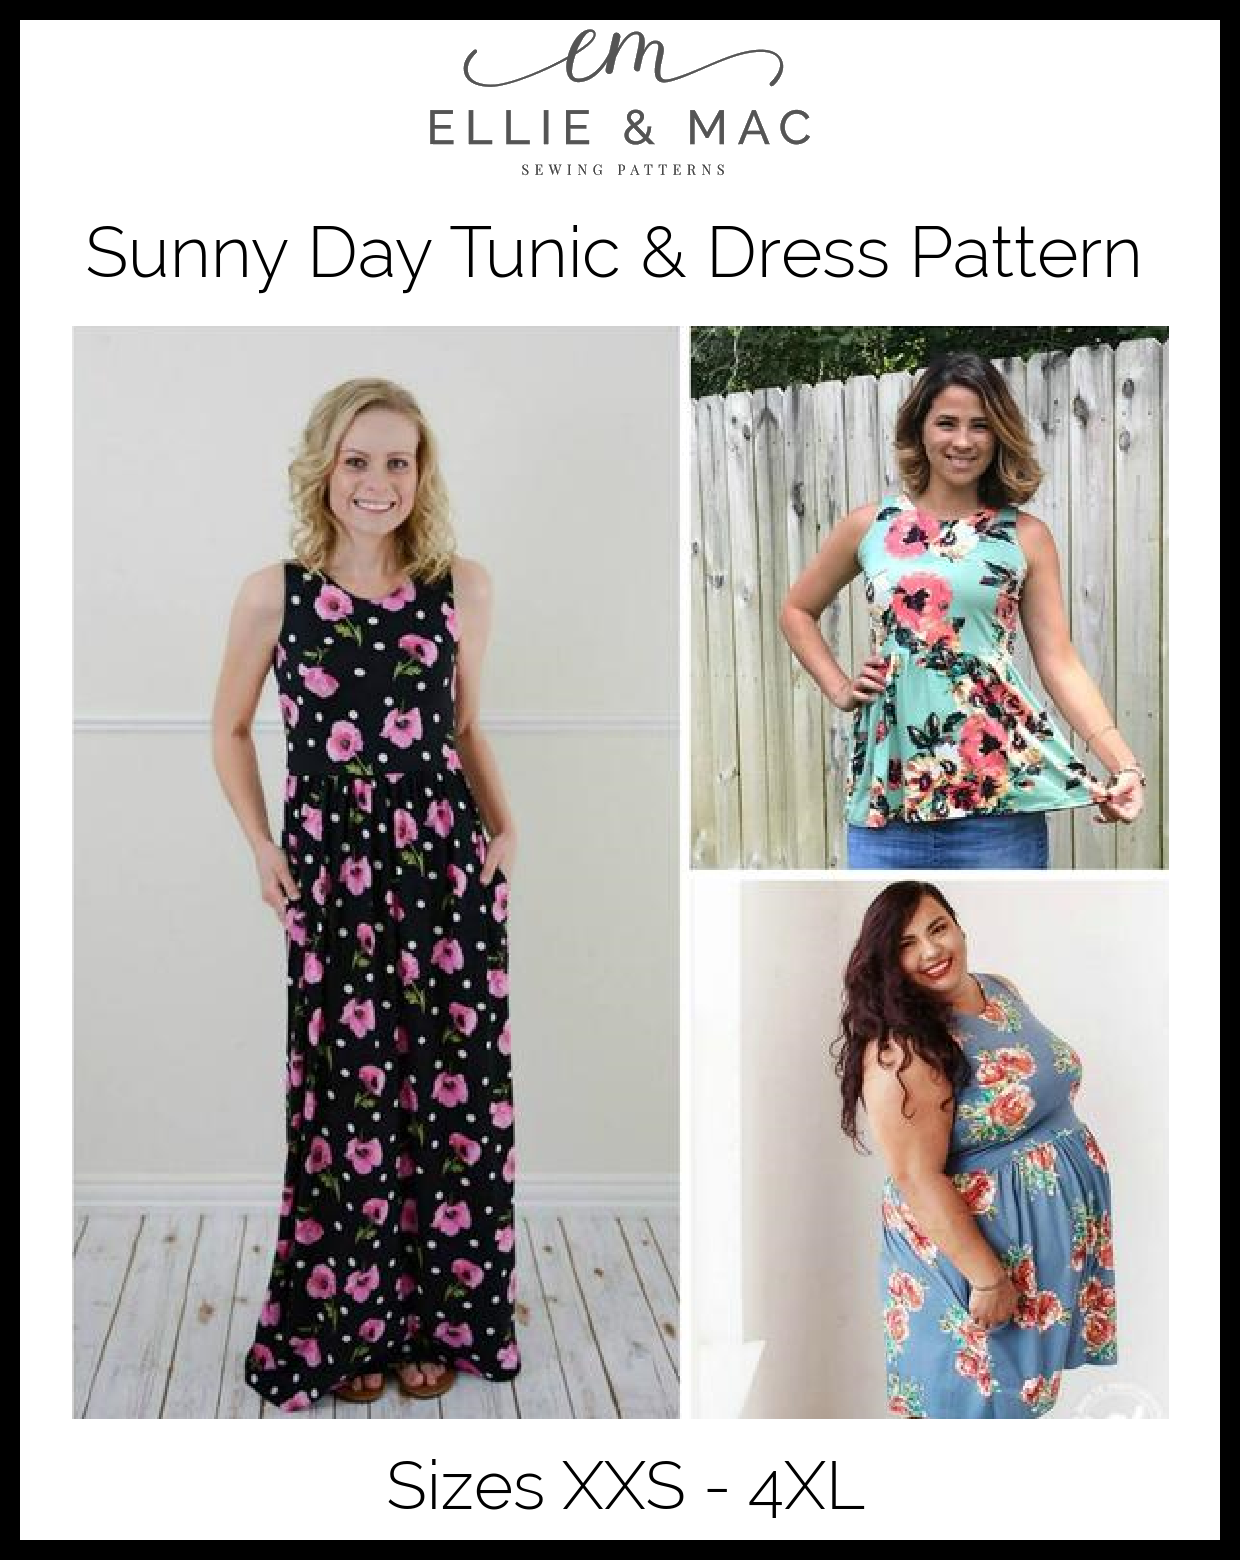 Sunny Day Tunic & Dress Pattern